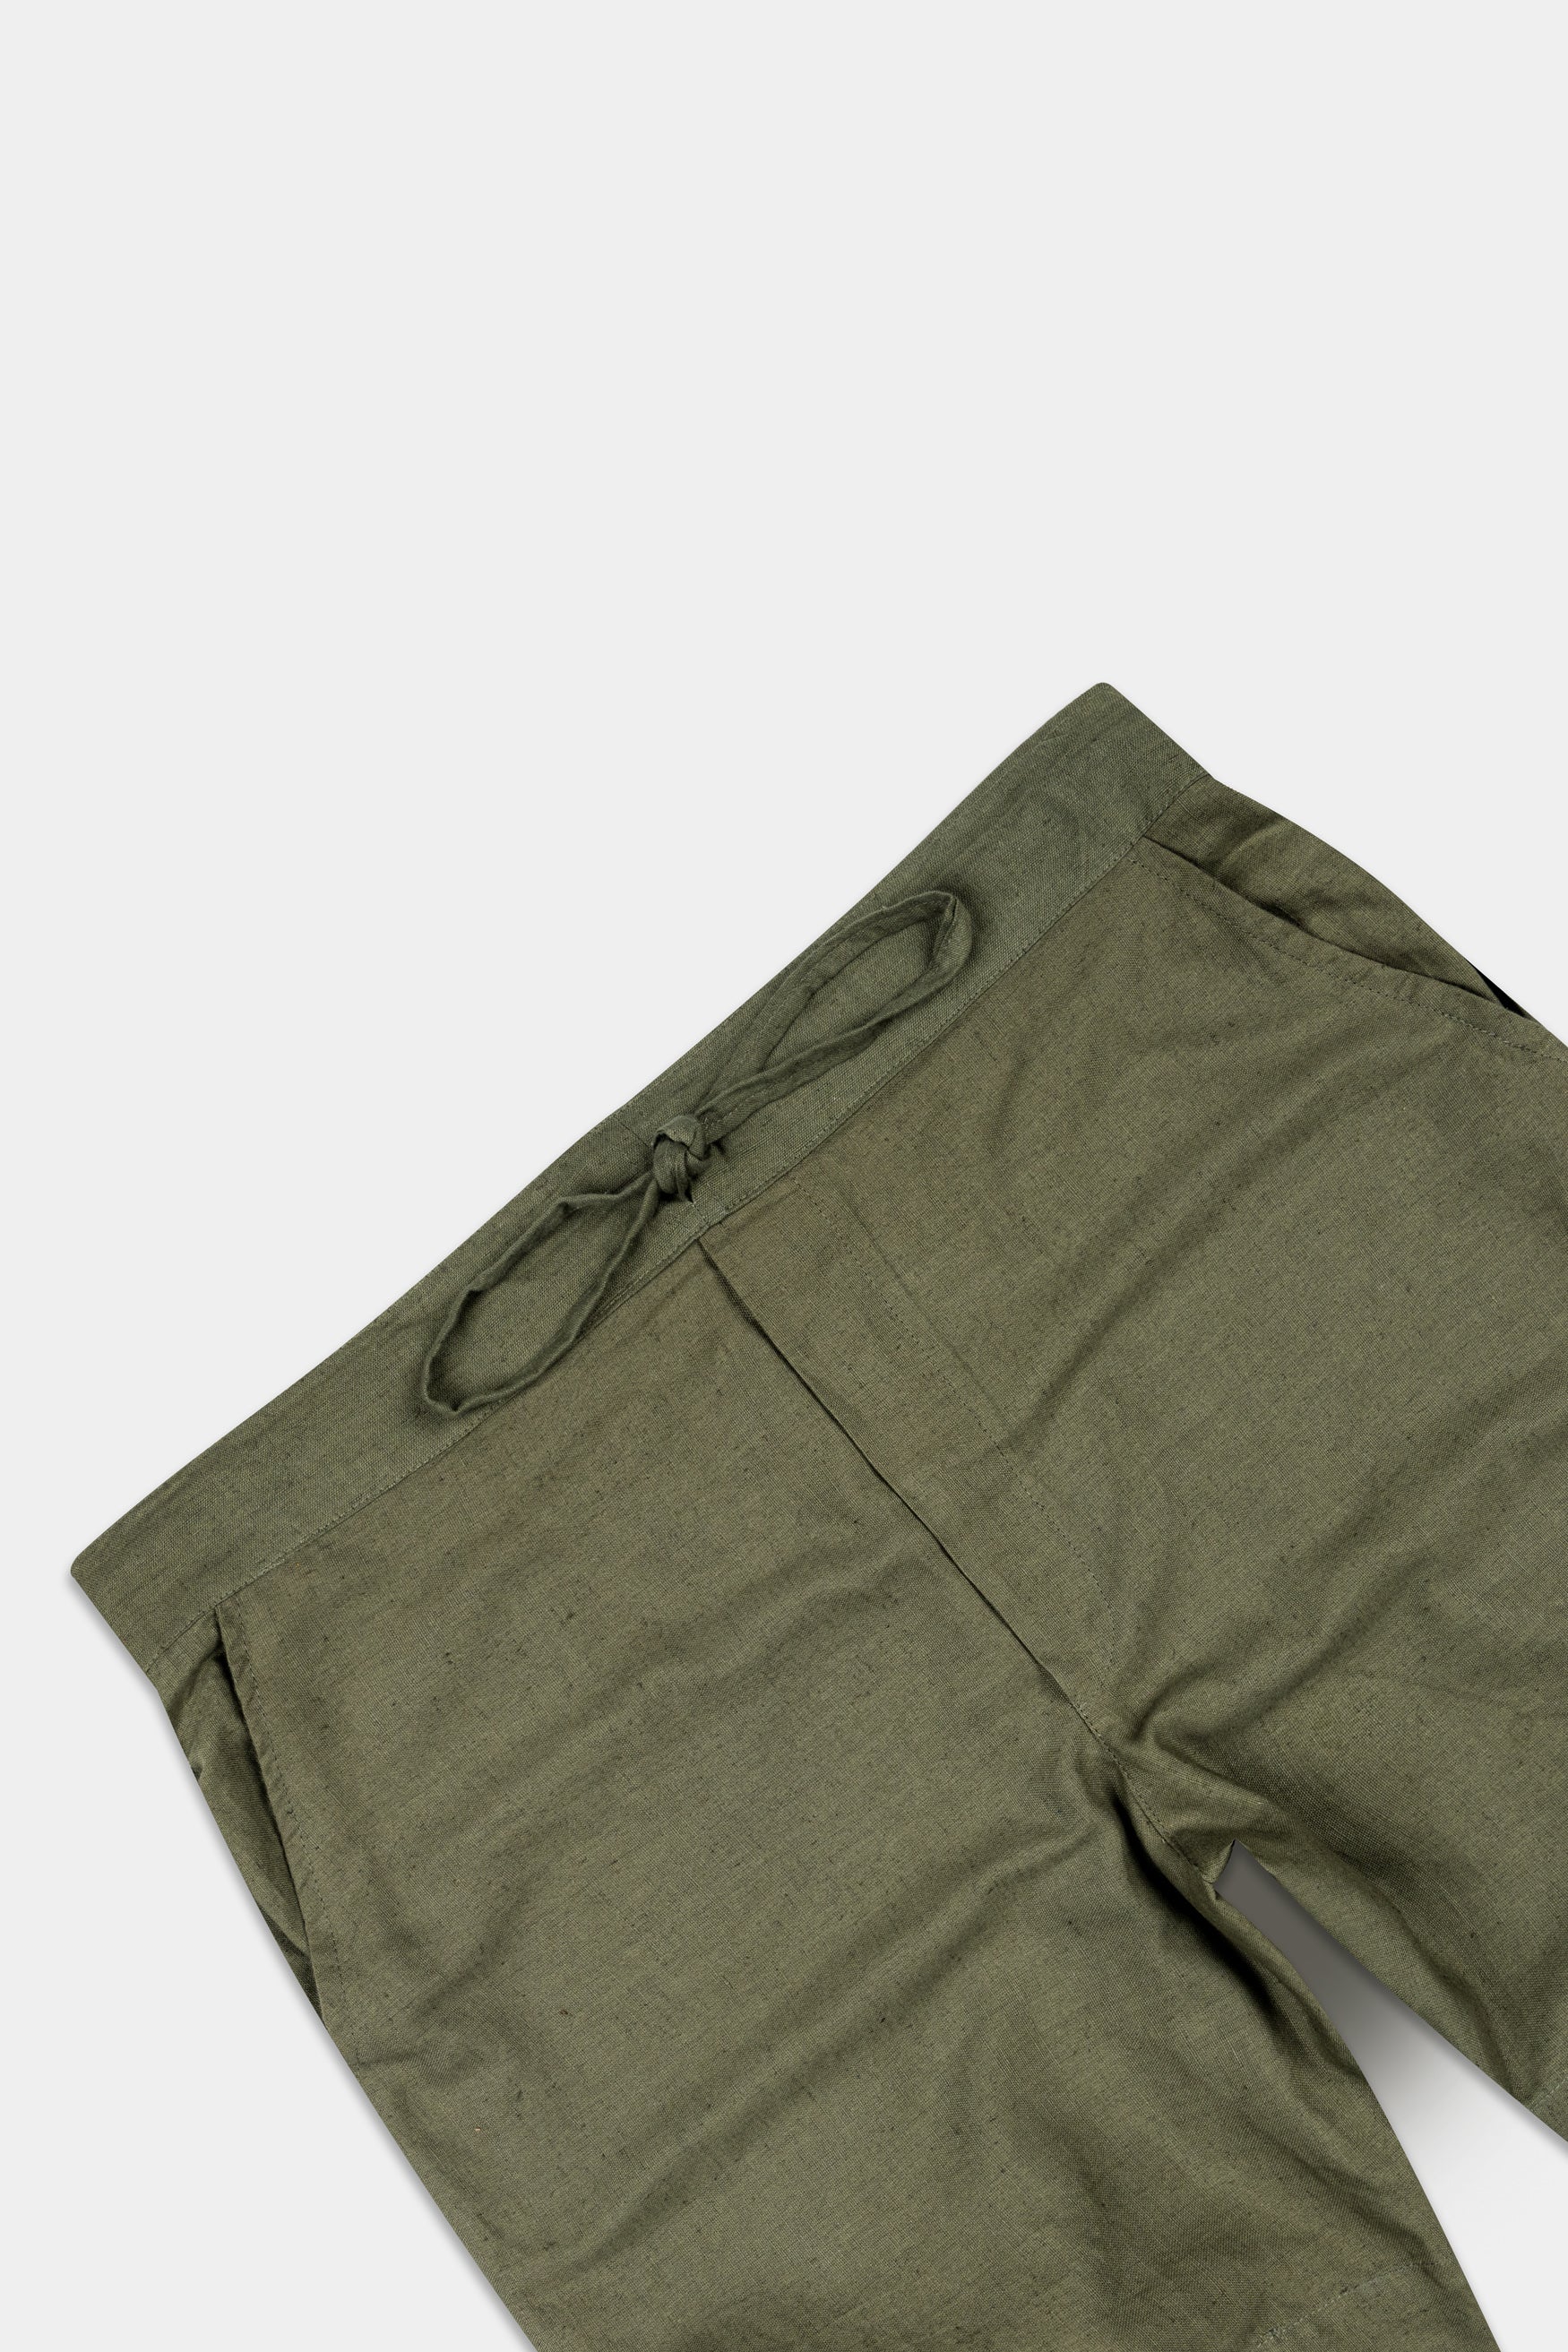 Kelp Green Textured Luxurious Linen Shorts